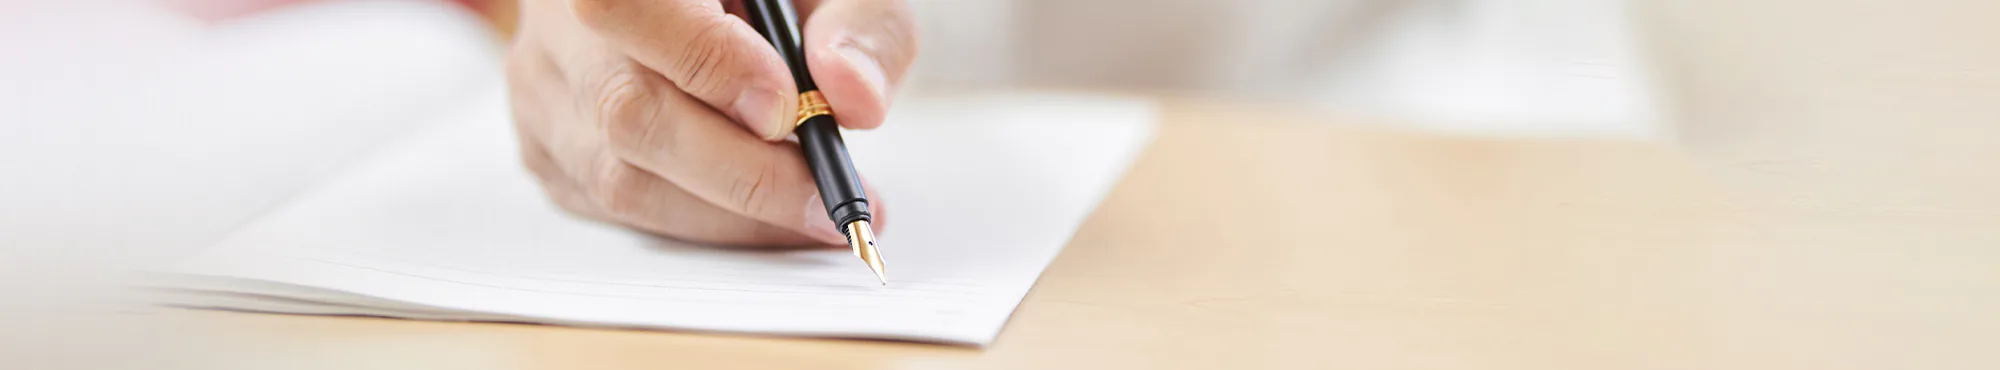 Eine Hand schreibt mit Füllhalter in ein Dokument. Es ist wichtig, Vorsorgedokumente für den Ernstfall ausgefüllt zu haben